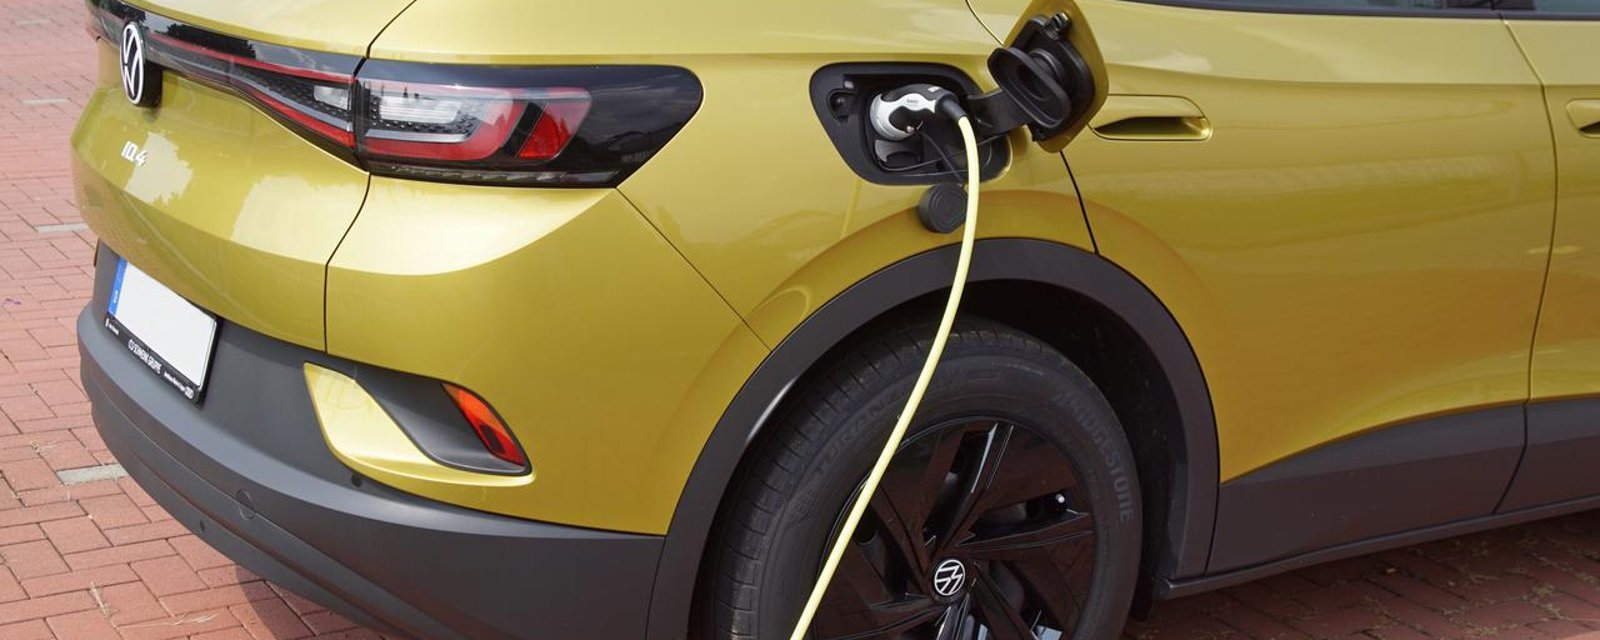 Excellente nouvelle pour les Québécois qui veulent acheter une voiture électrique